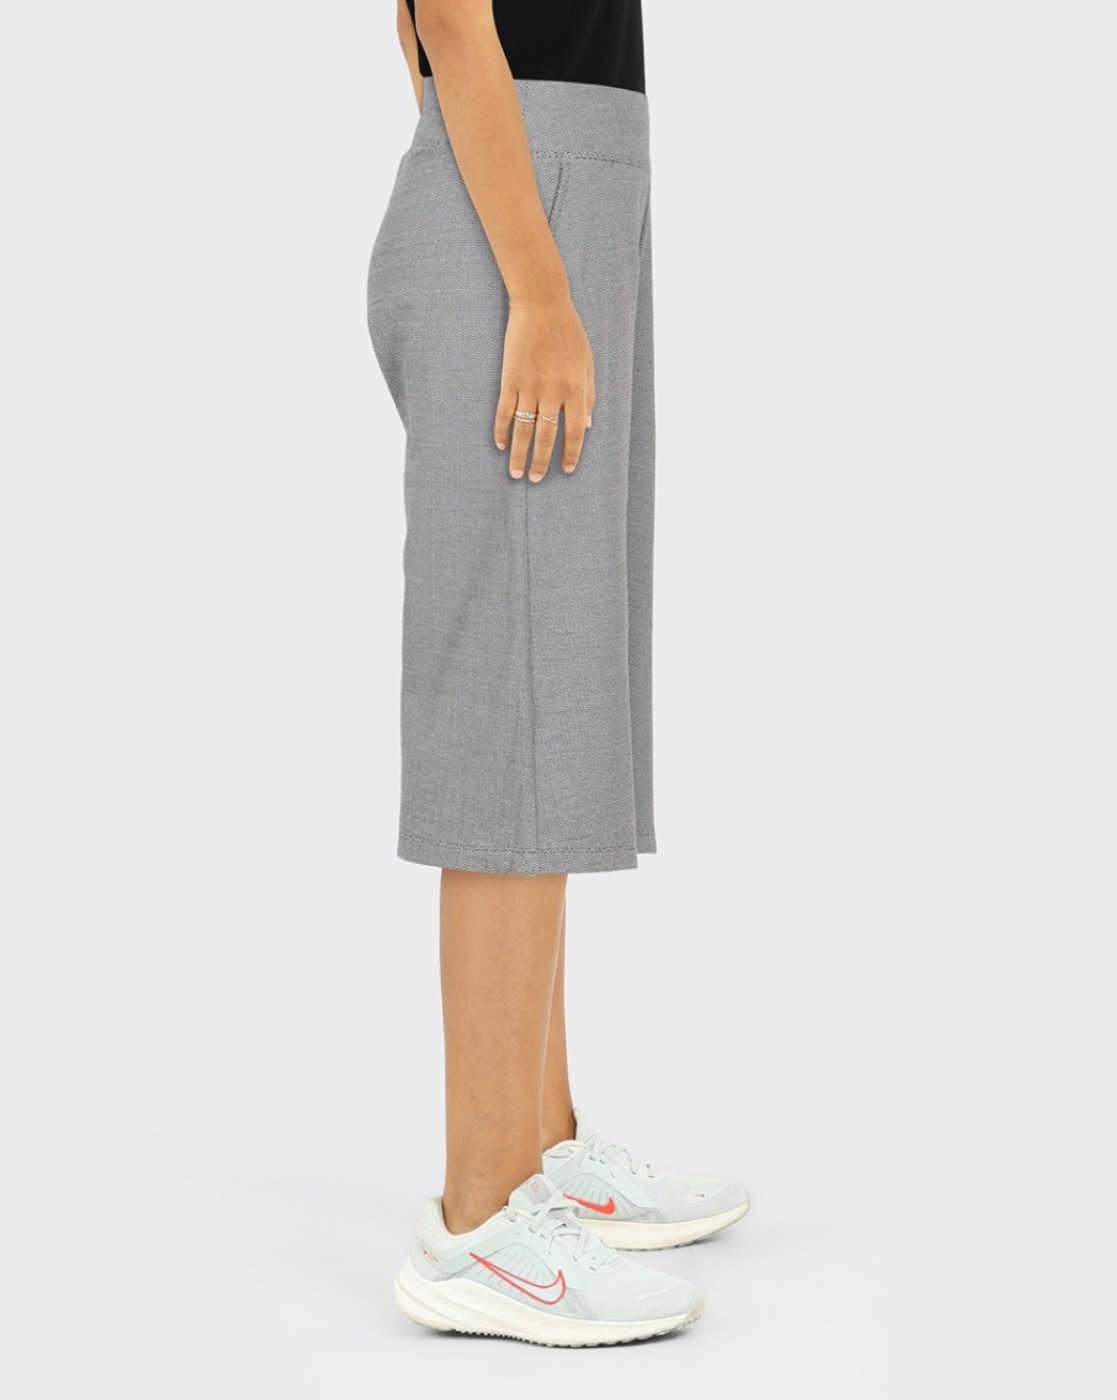 Buy Grey Trousers & Pants for Women by BLISSCLUB Online